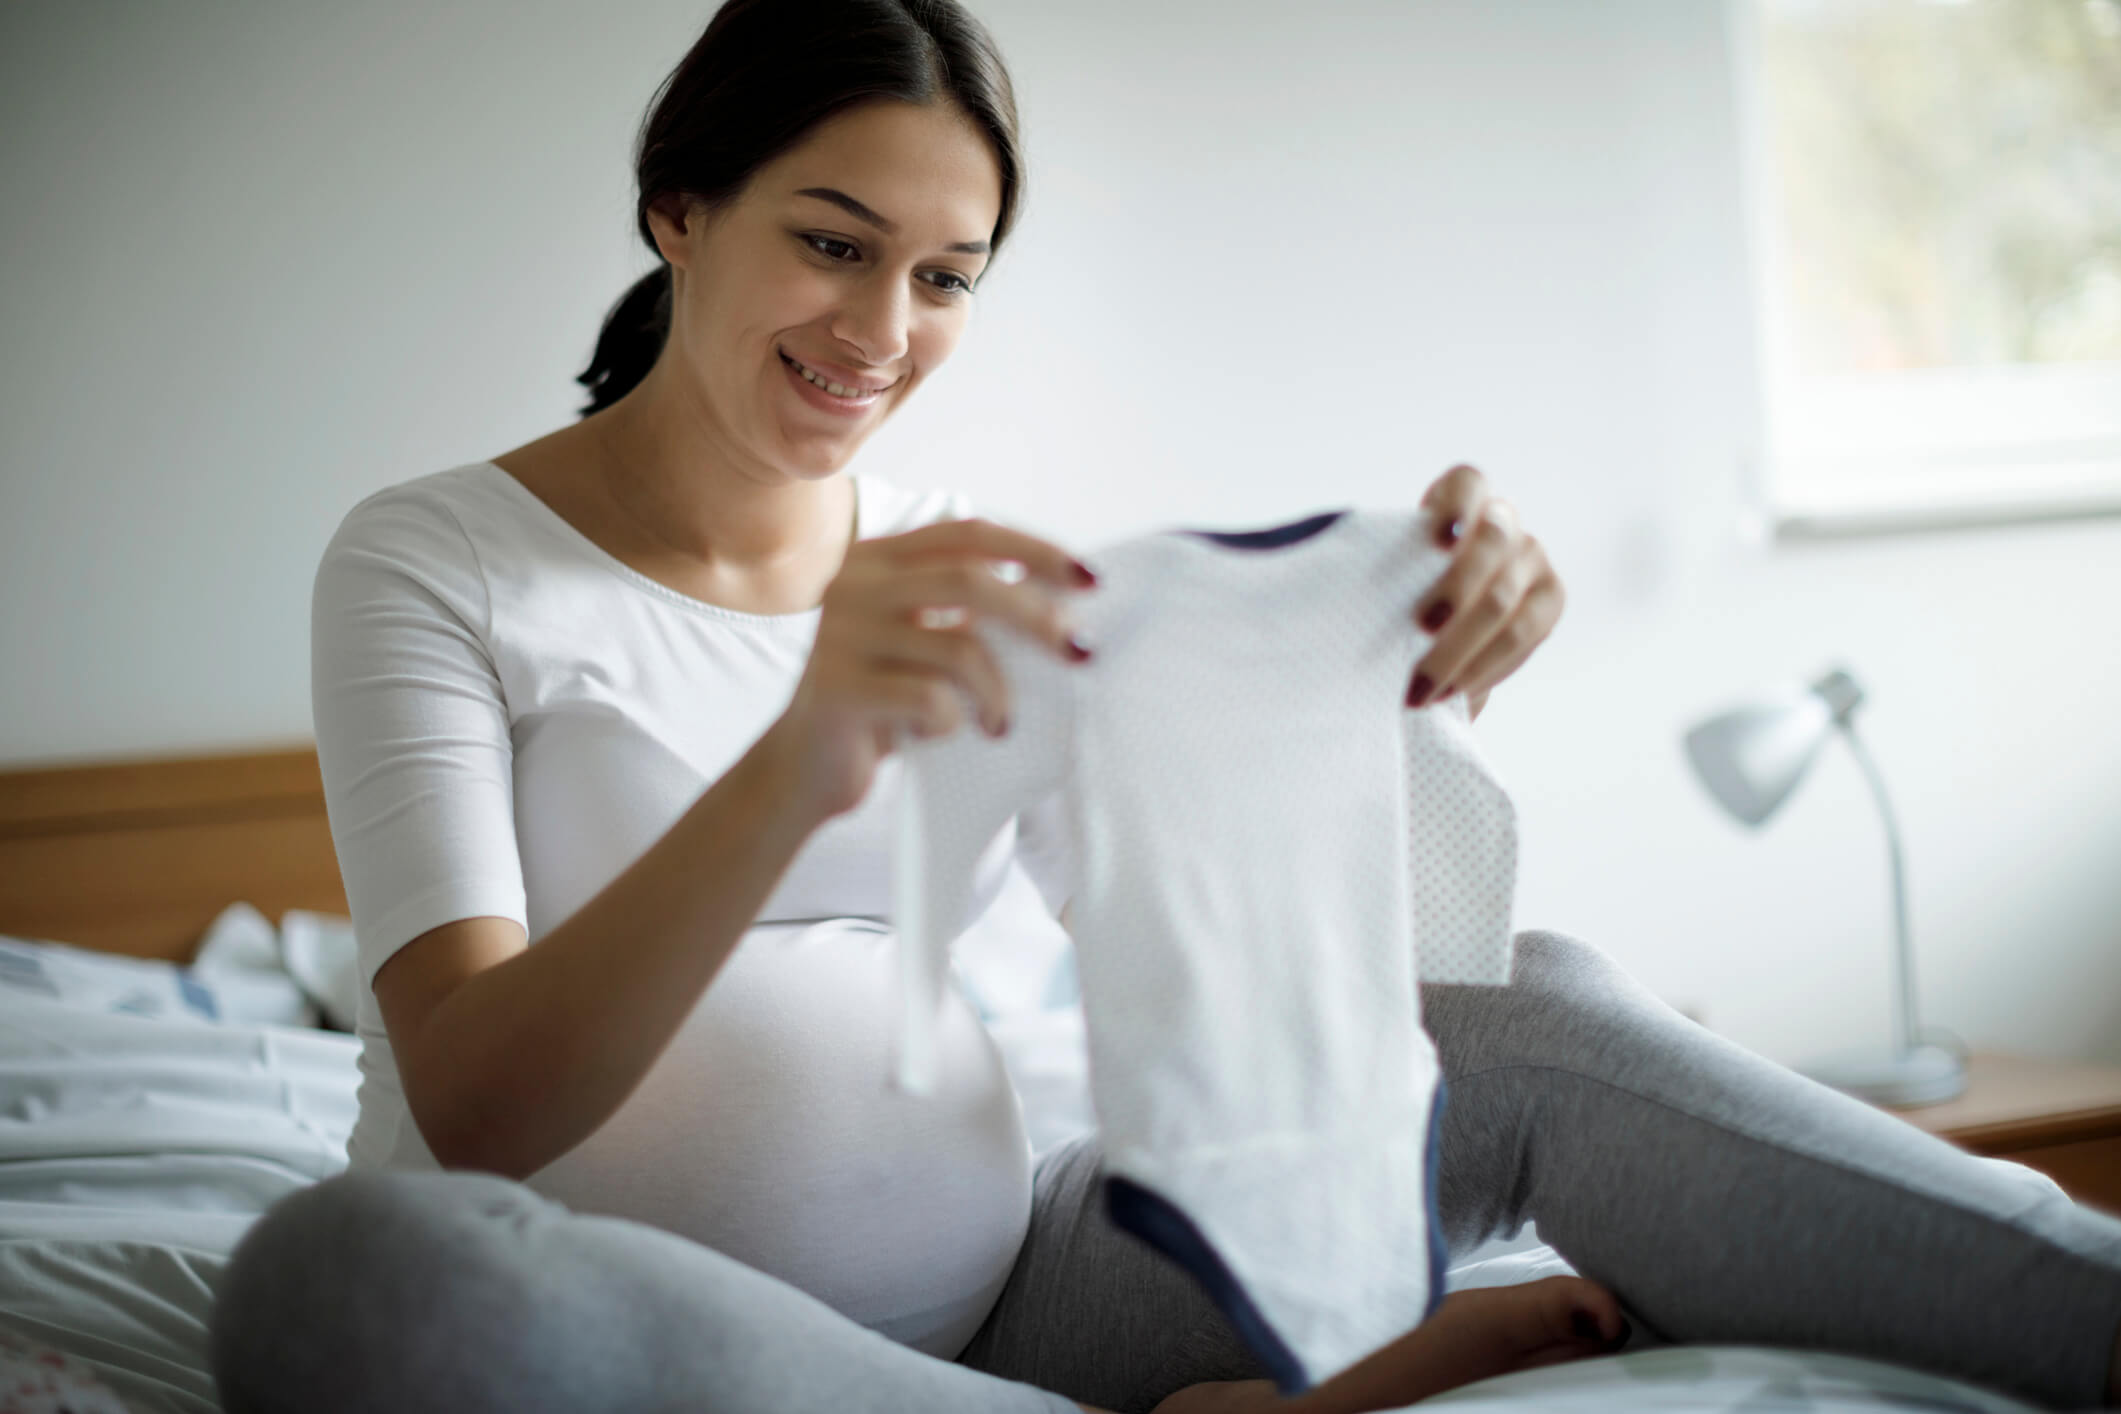 Checkliste Baby Erstausstattung